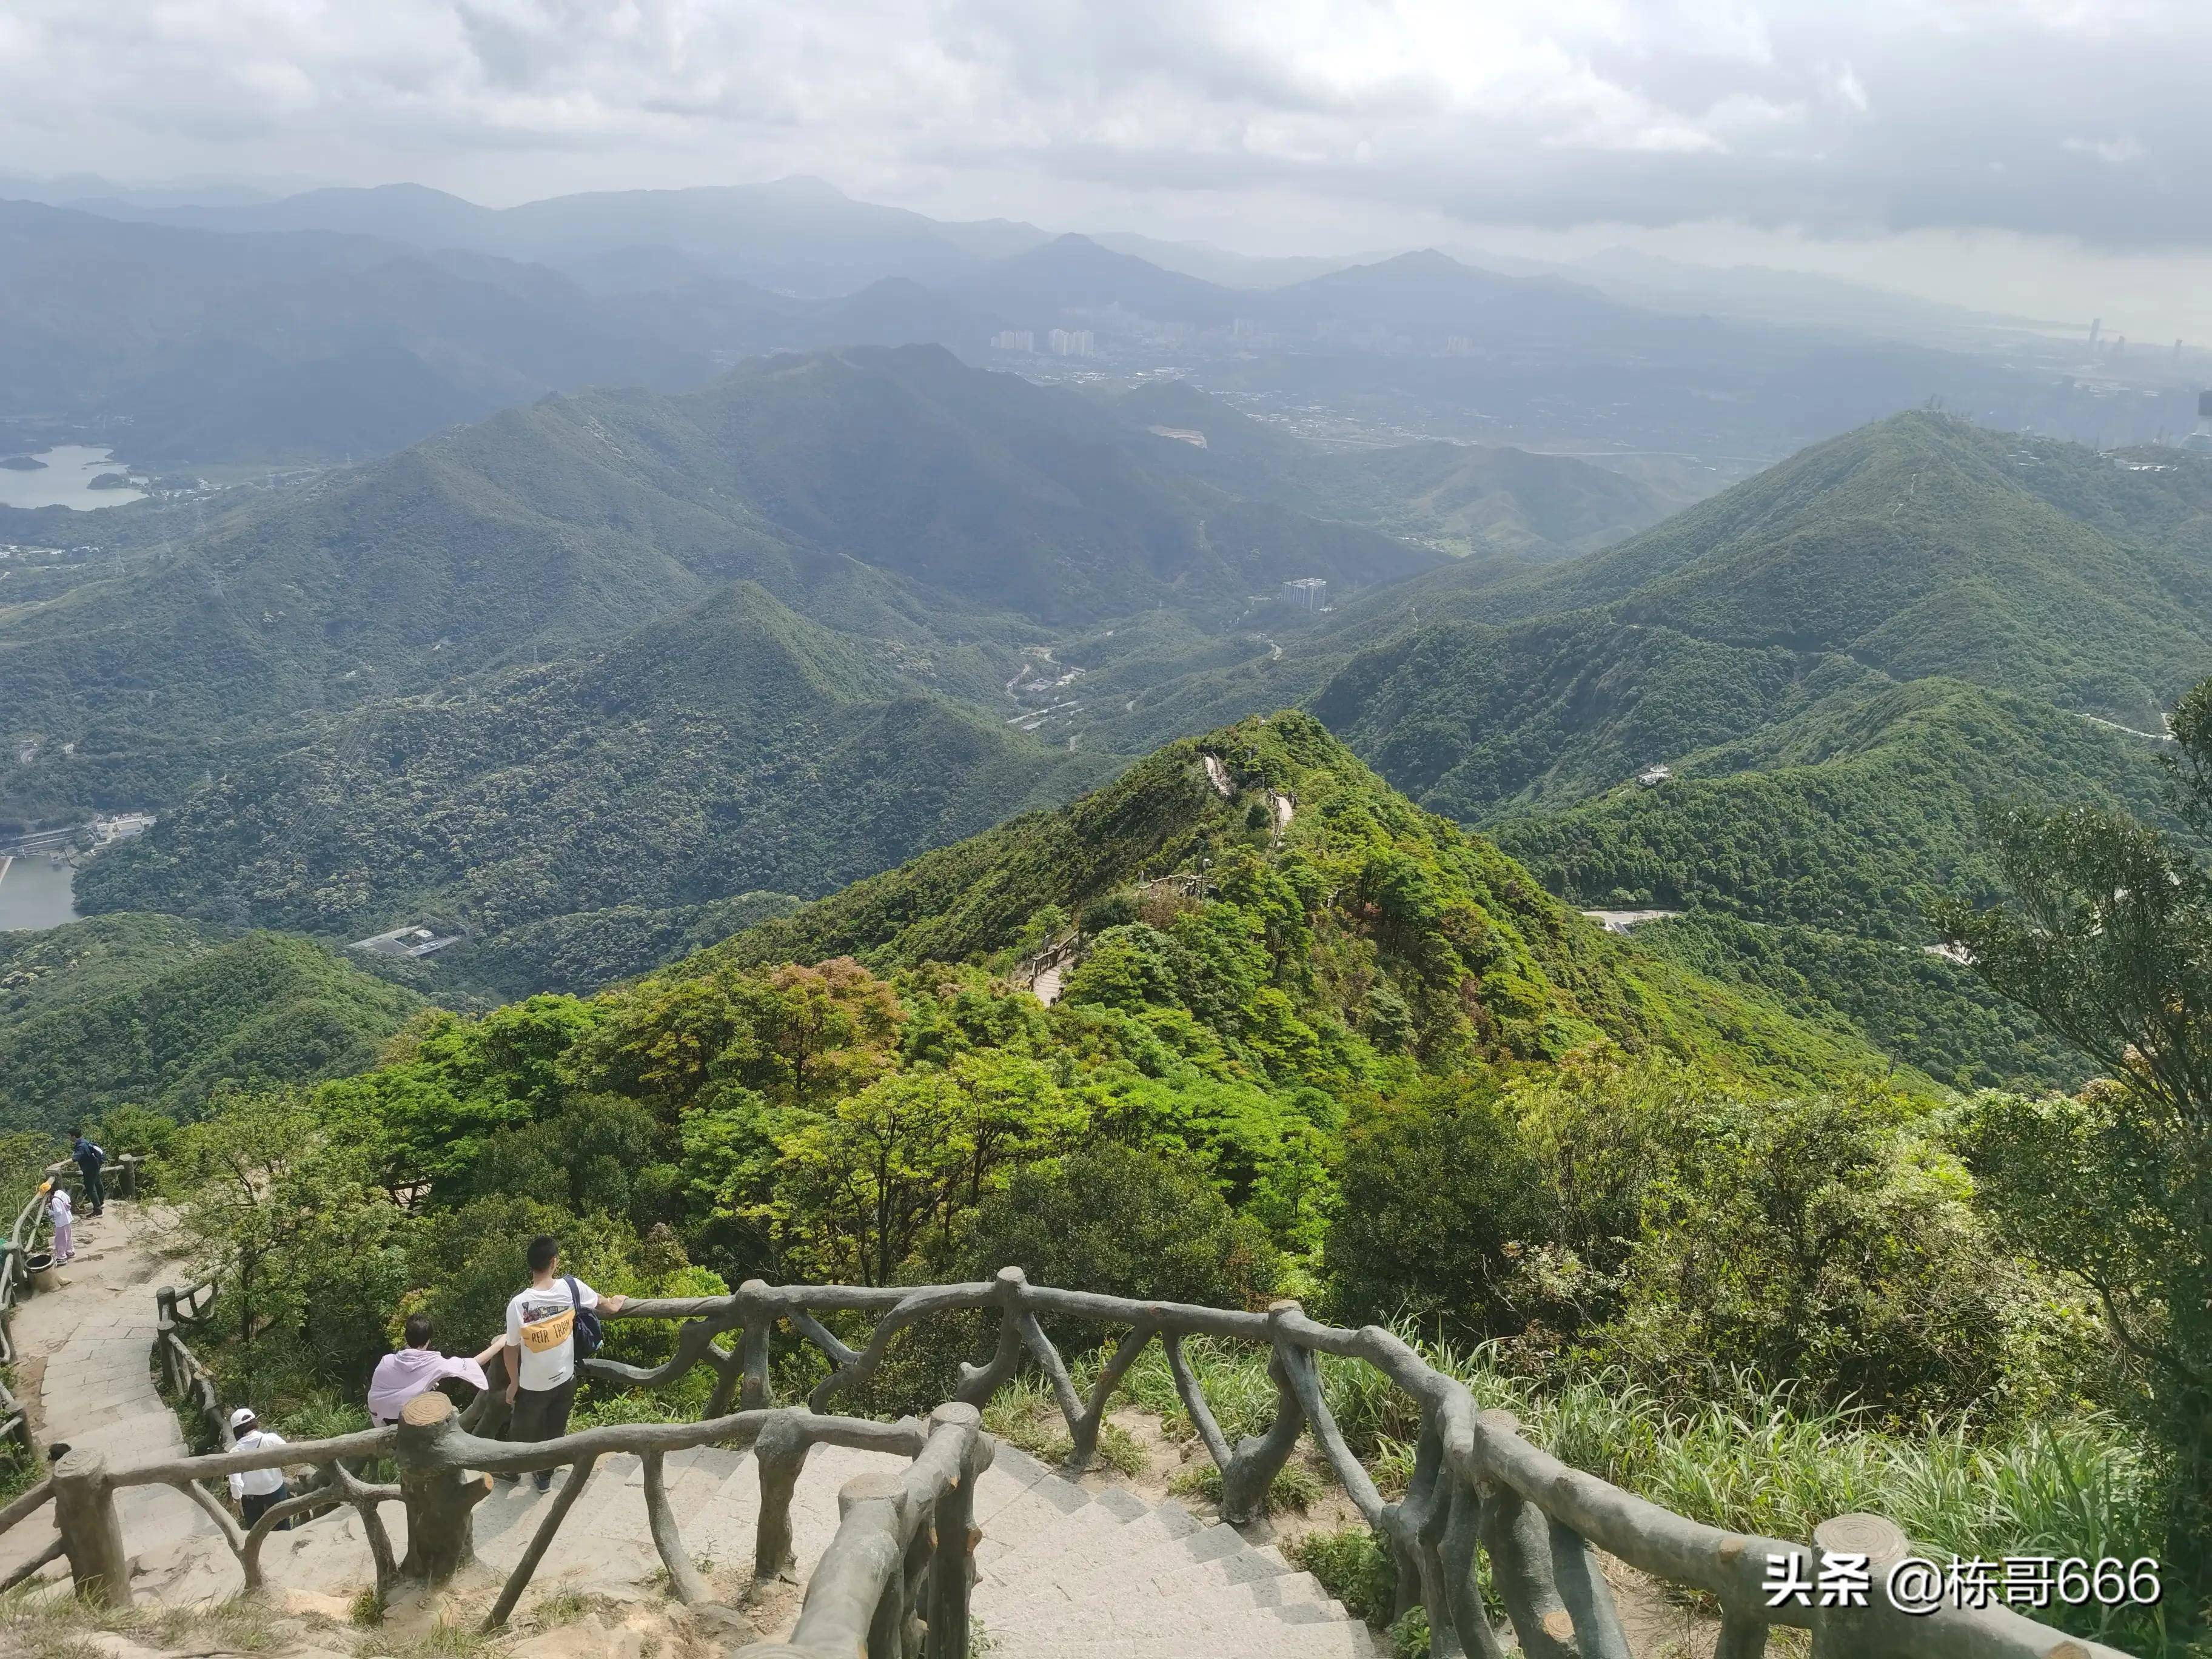 深圳梧桐山的好汉坡确实具有挑战性登顶鹏城第一峰其乐无穷